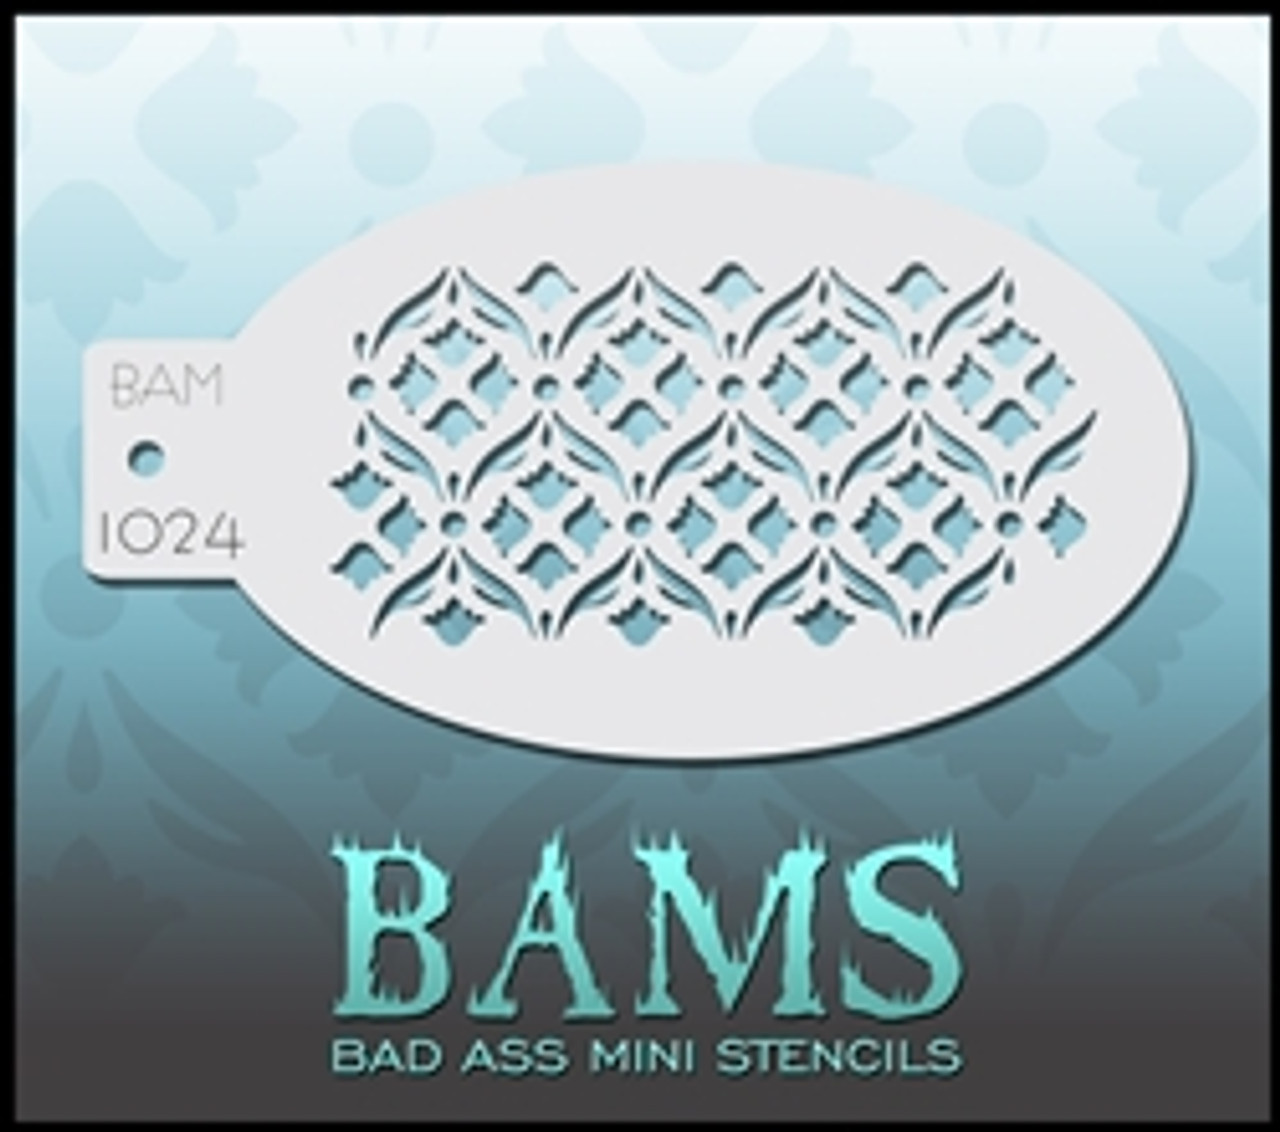 1024 Bad Ass Mini Stencil